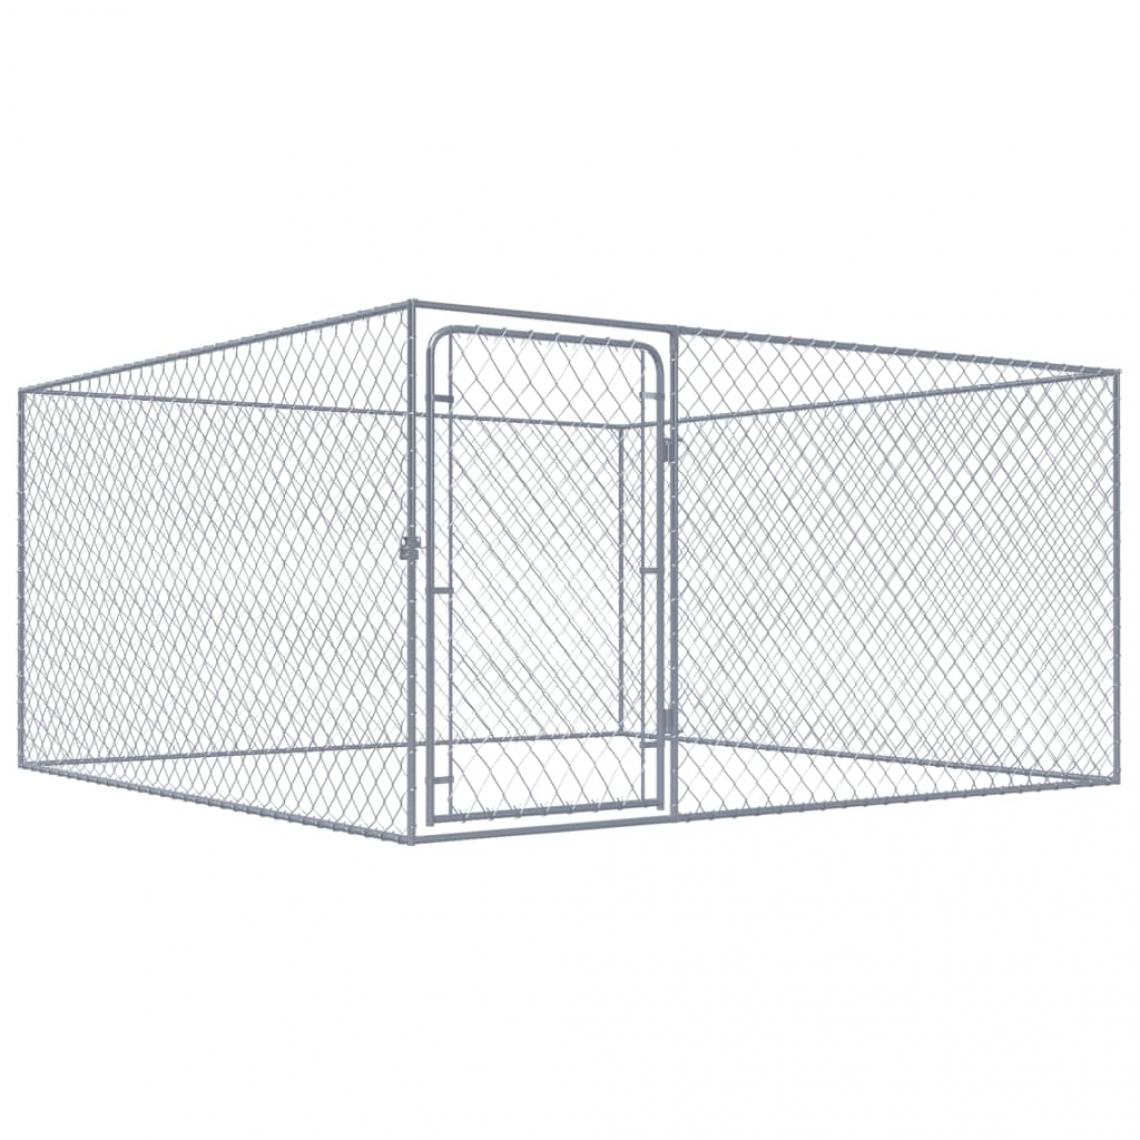 Helloshop26 - Chenil extérieur cage enclos parc animaux chien extérieur pour chiens acier galvanisé 2 x 2 x 1 m 02_0000471 - Clôture pour chien